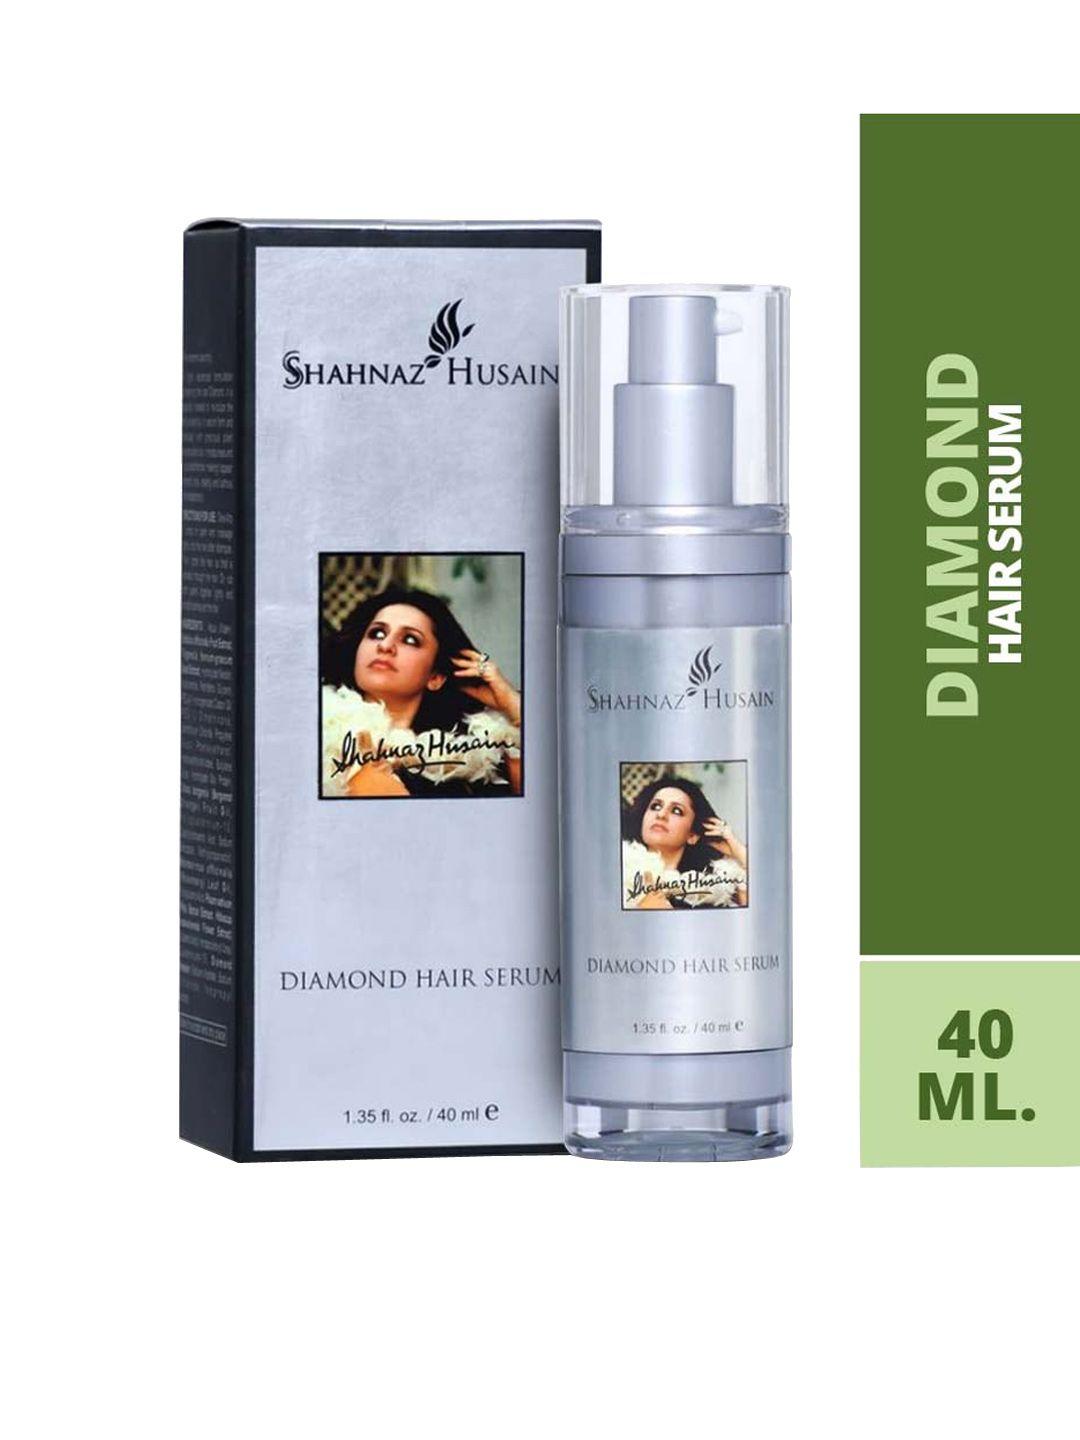 shahnaz husain diamond hair serum 40 ml